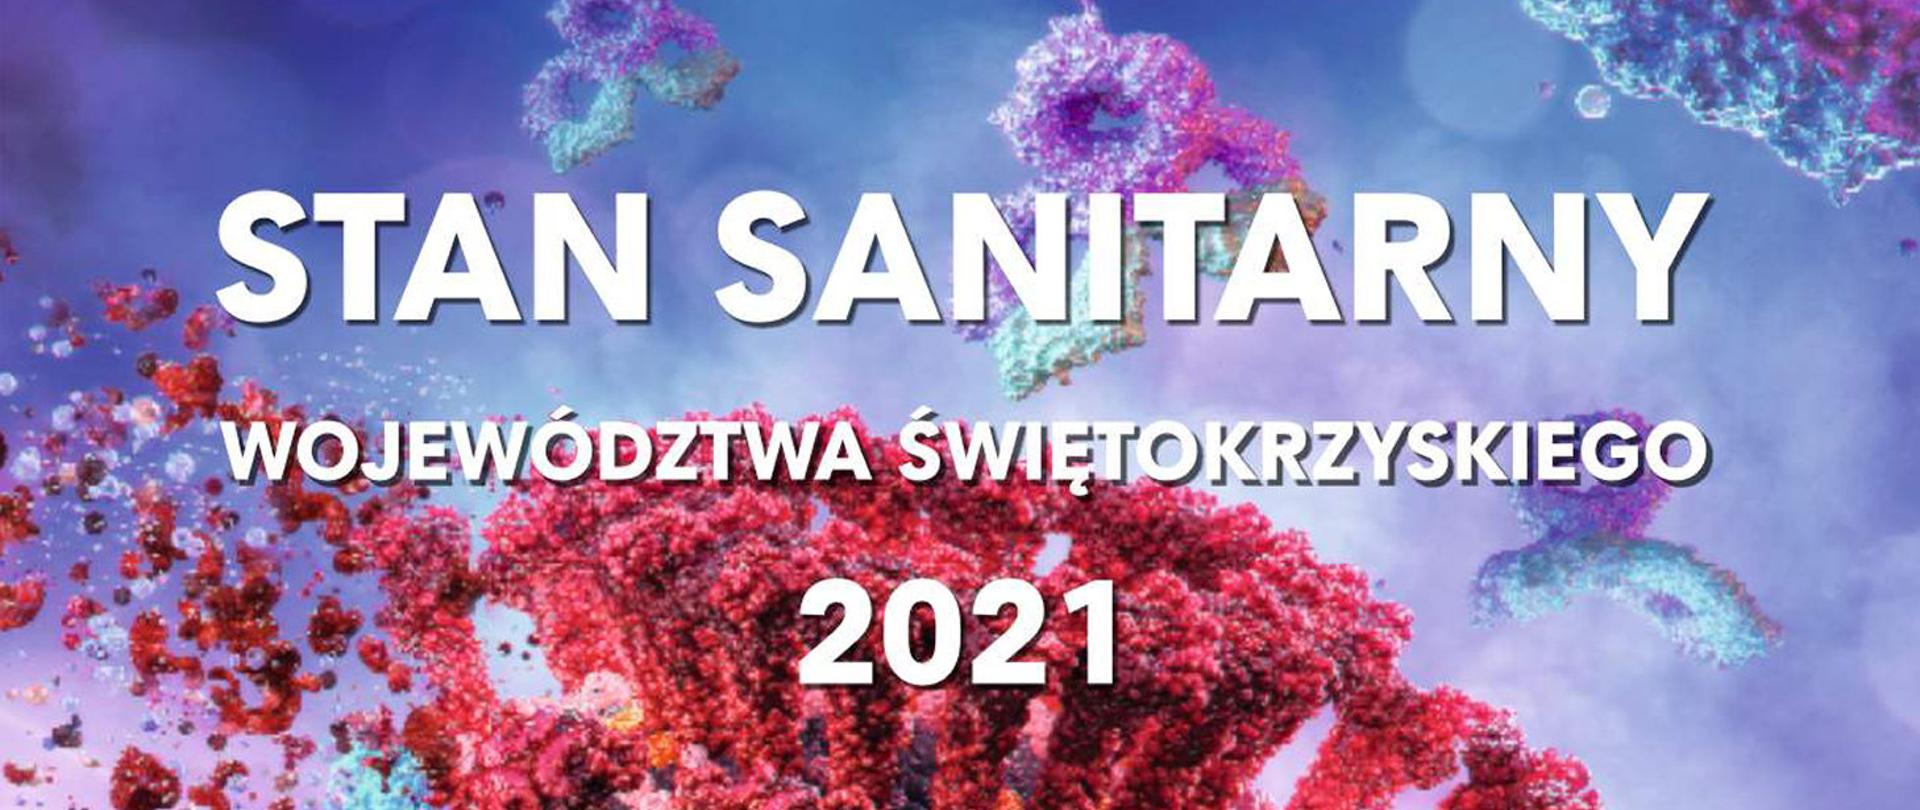 STAN SANITARNY województwa świętokrzyskiego 2021